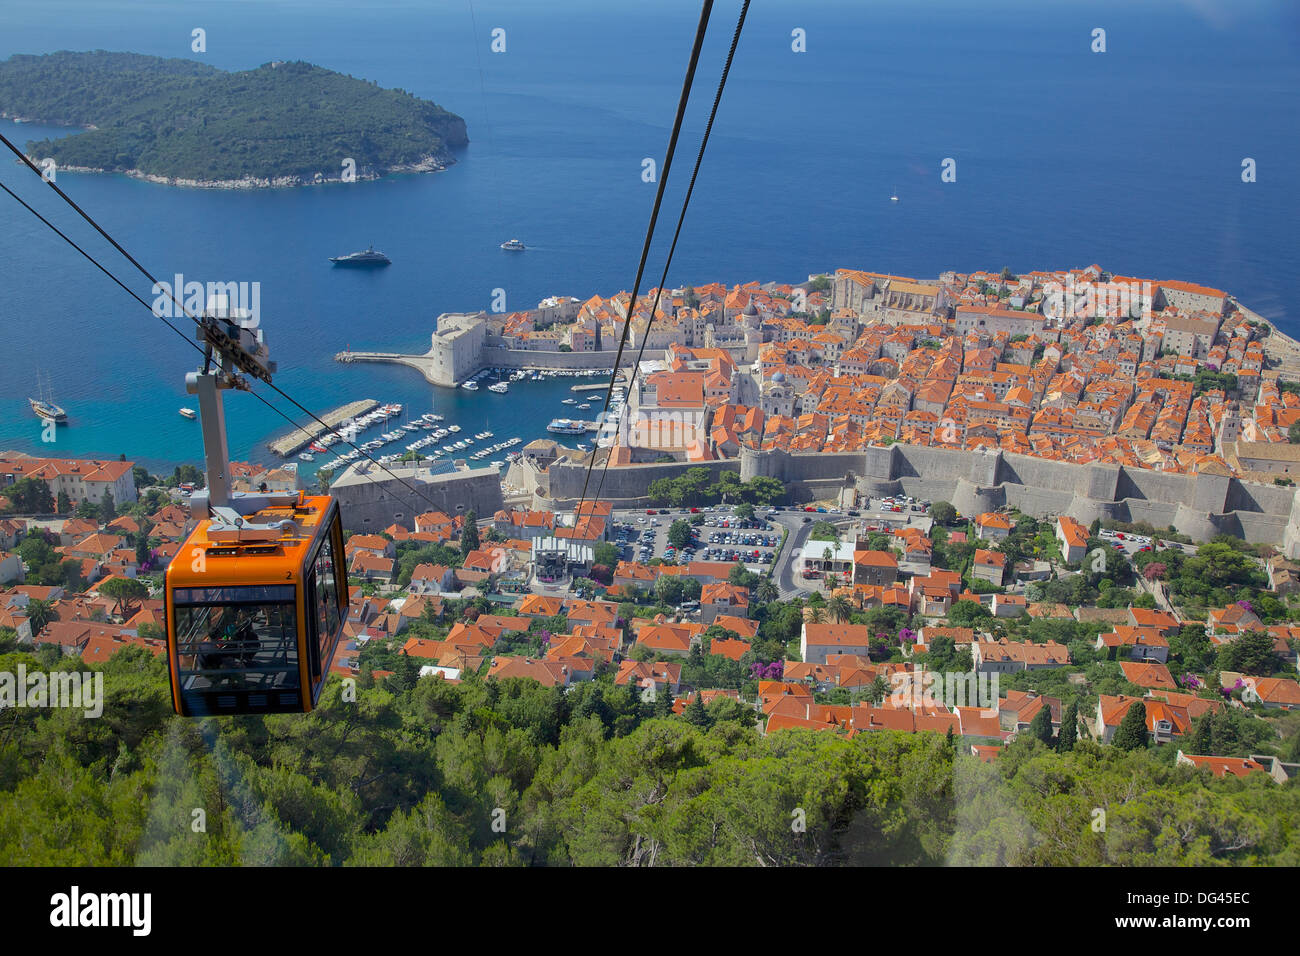 Vue sur la vieille ville, site du patrimoine mondial de l'UNESCO, à partir de la télécabine, Dubrovnik, Dubrovnik, Croatie, la côte dalmate, Europe Banque D'Images